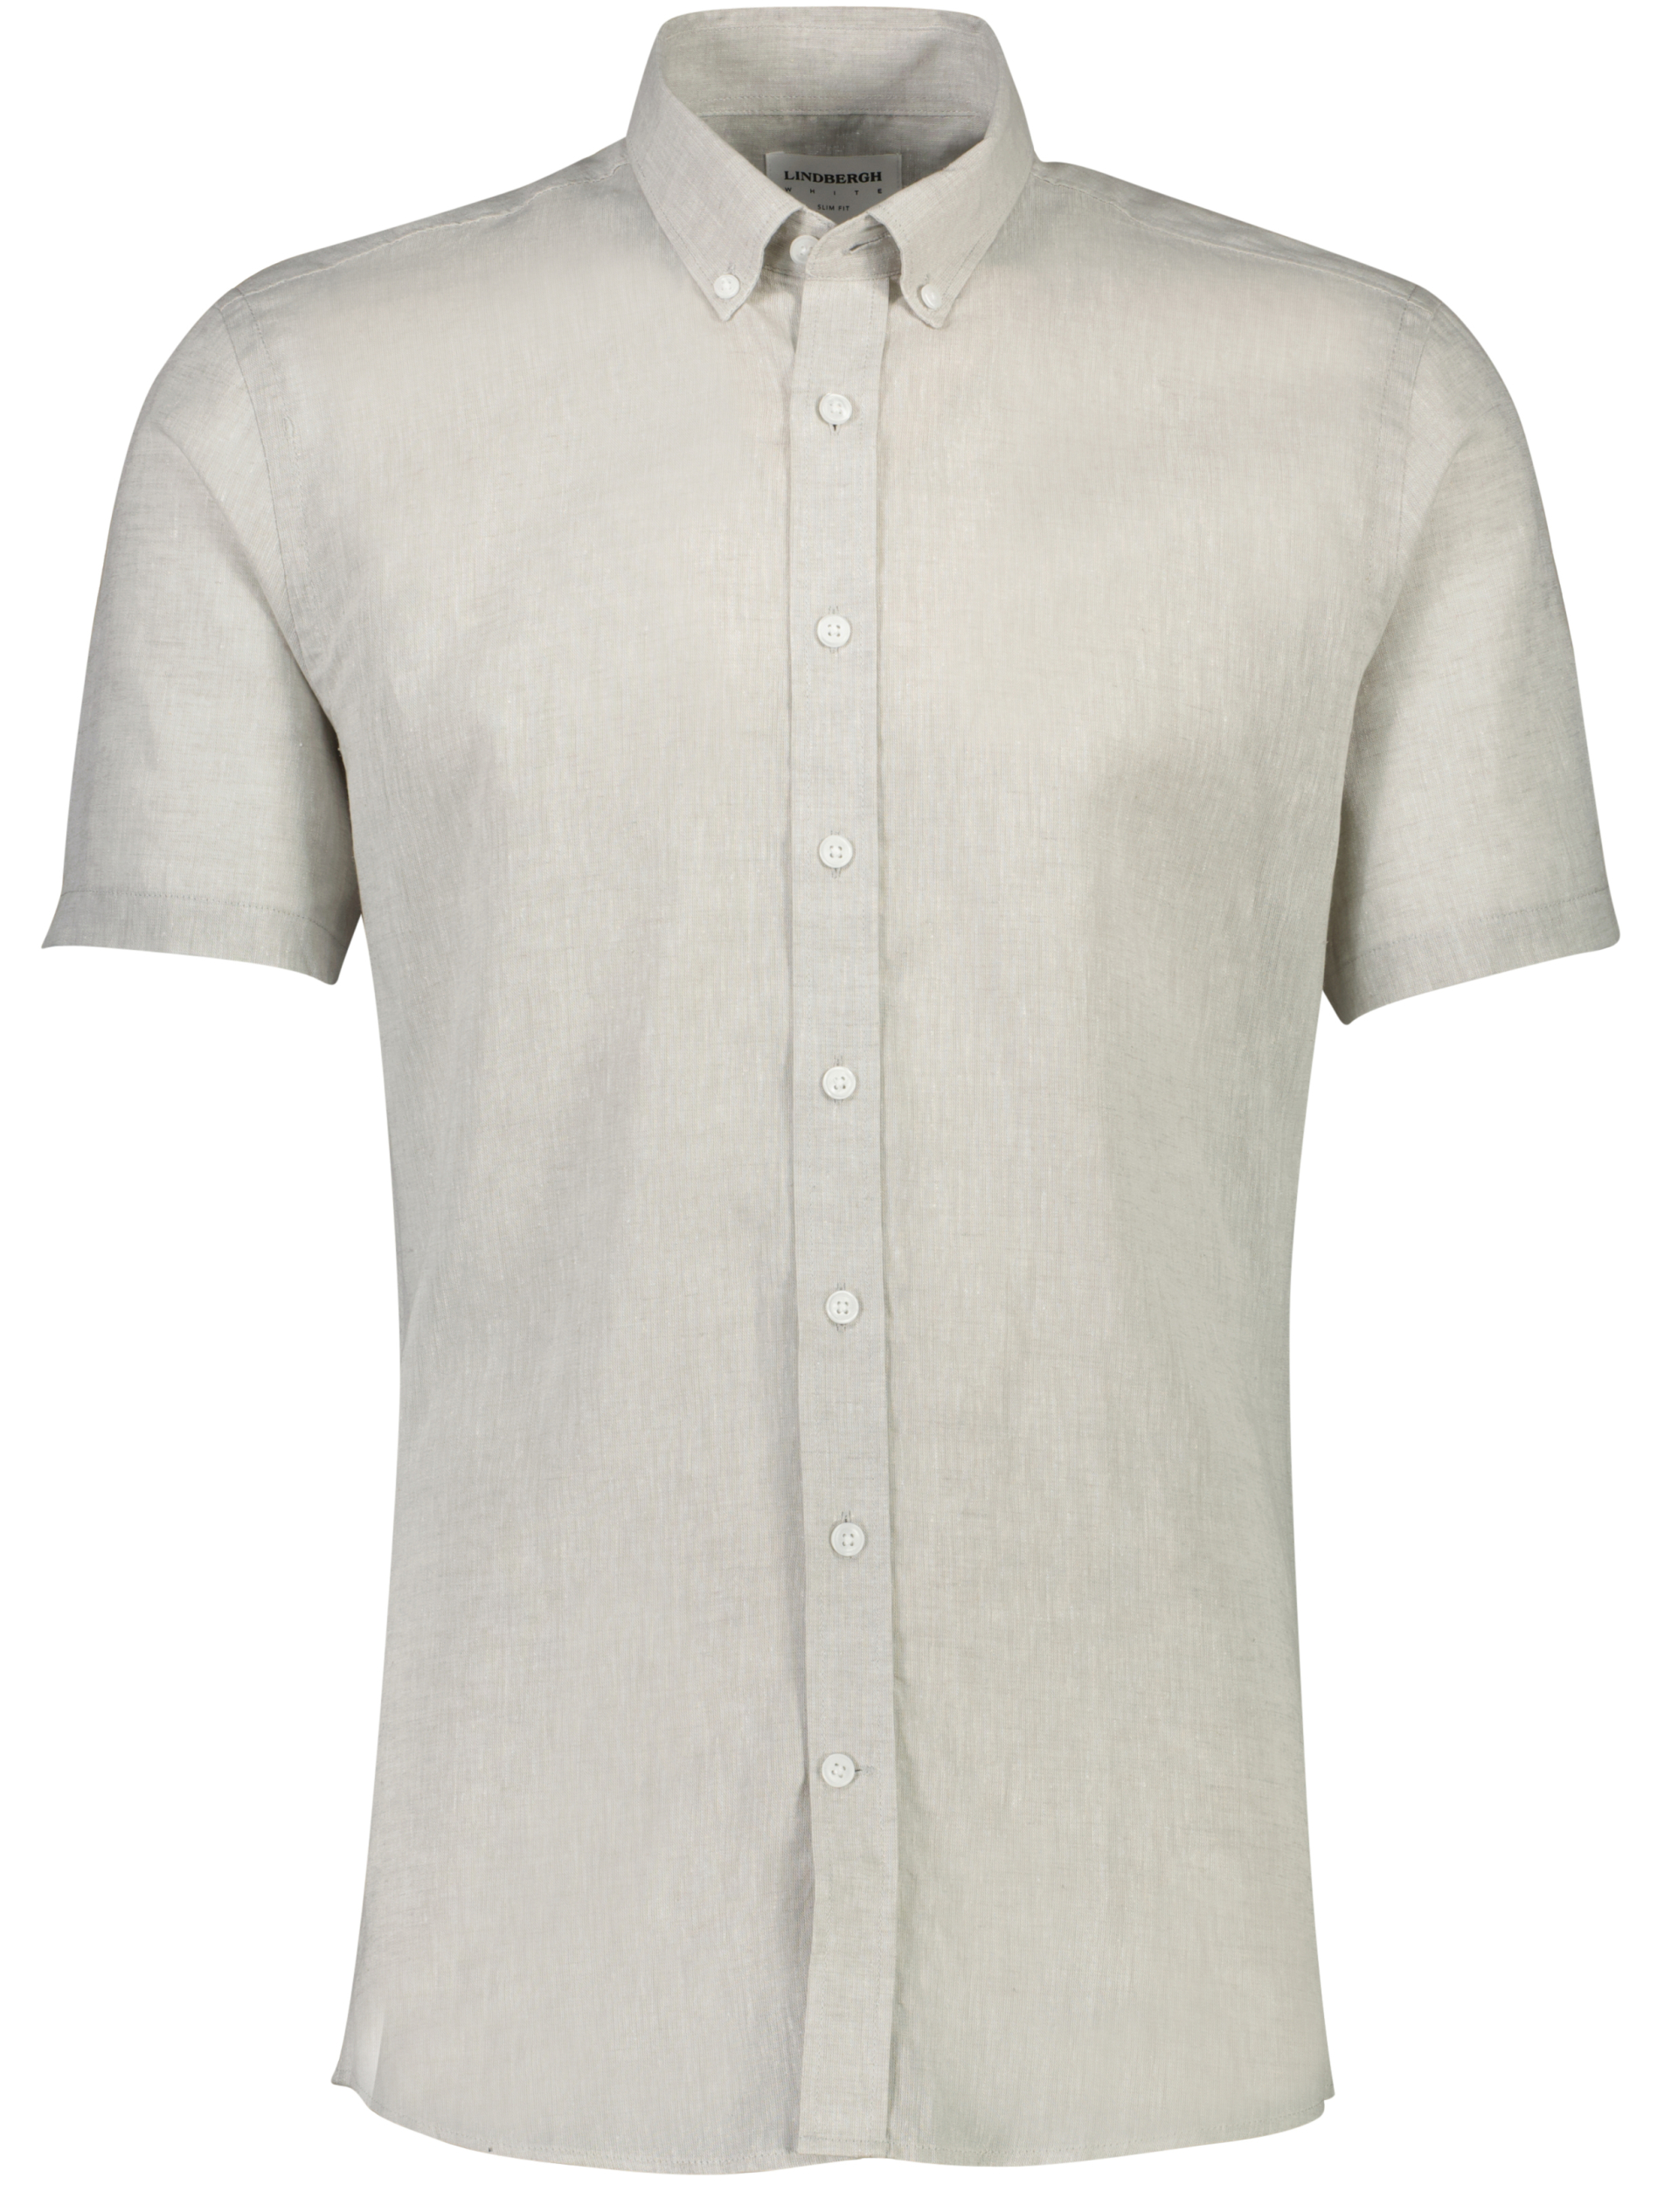 Lindbergh Linen shirt grey / light grey